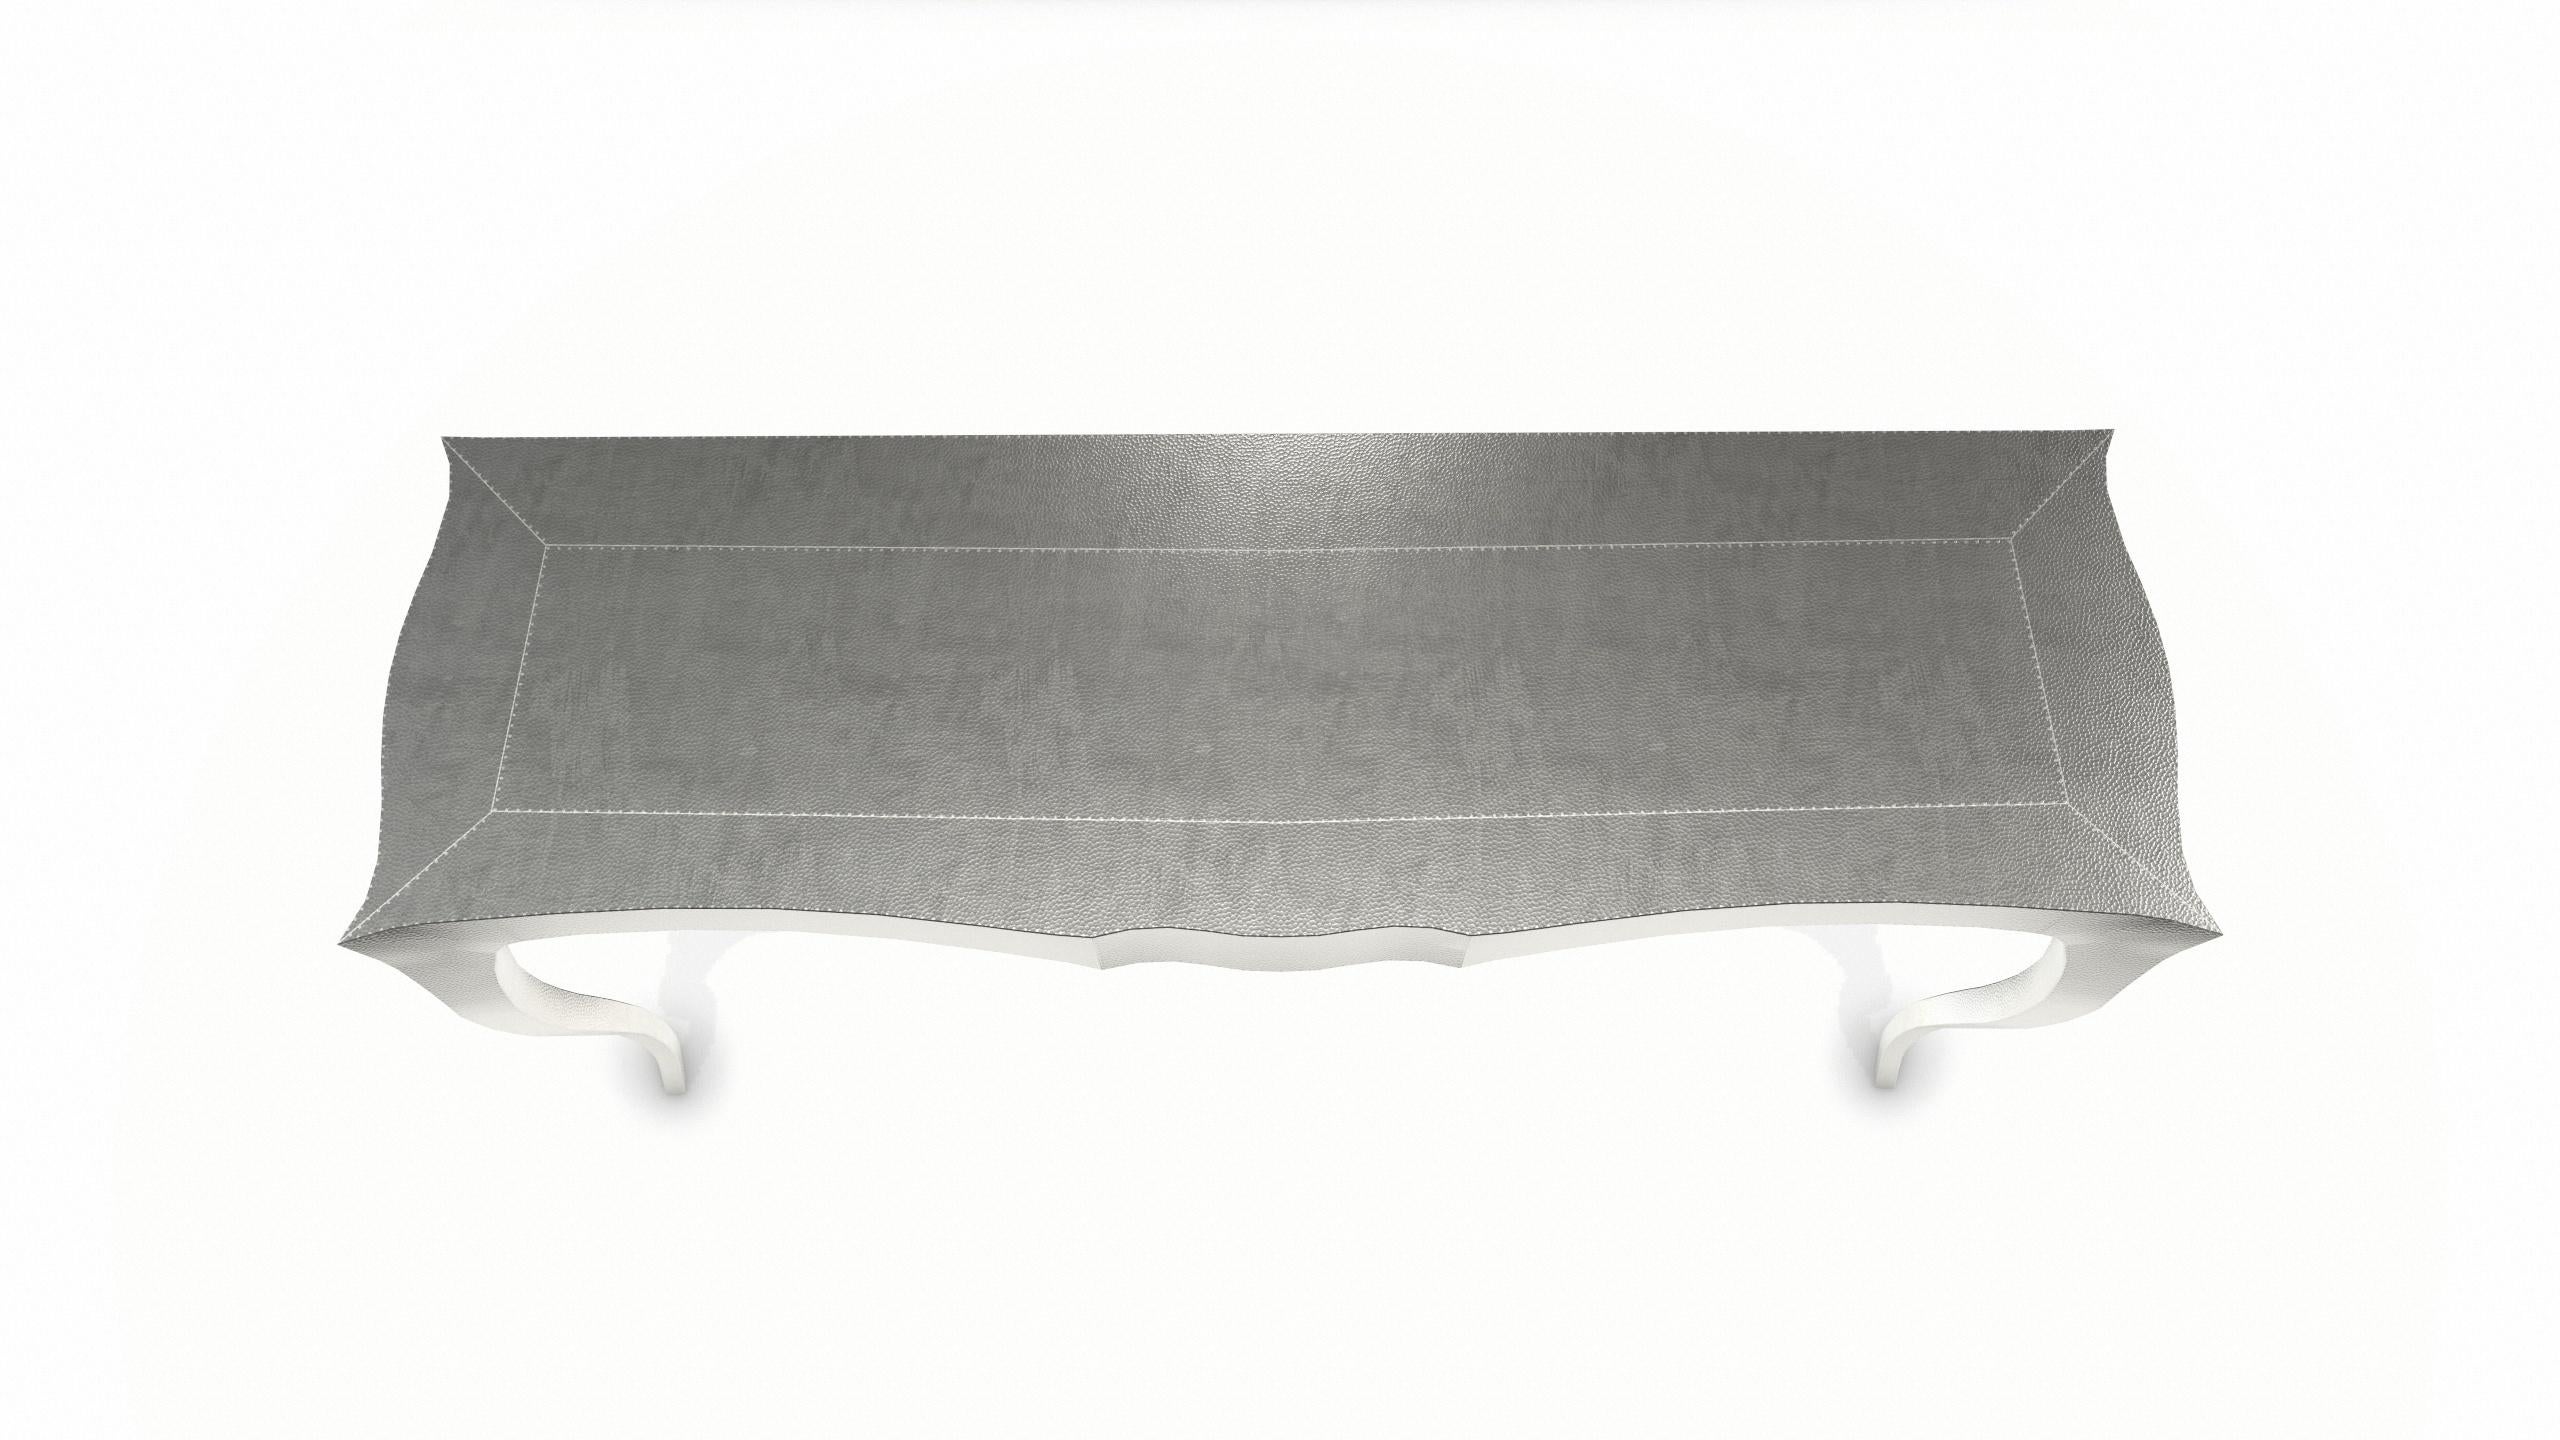 Metallo Louise Console Art Nouveau Tray Table Mid. Bronzo bianco martellato di Paul Mathieu in vendita